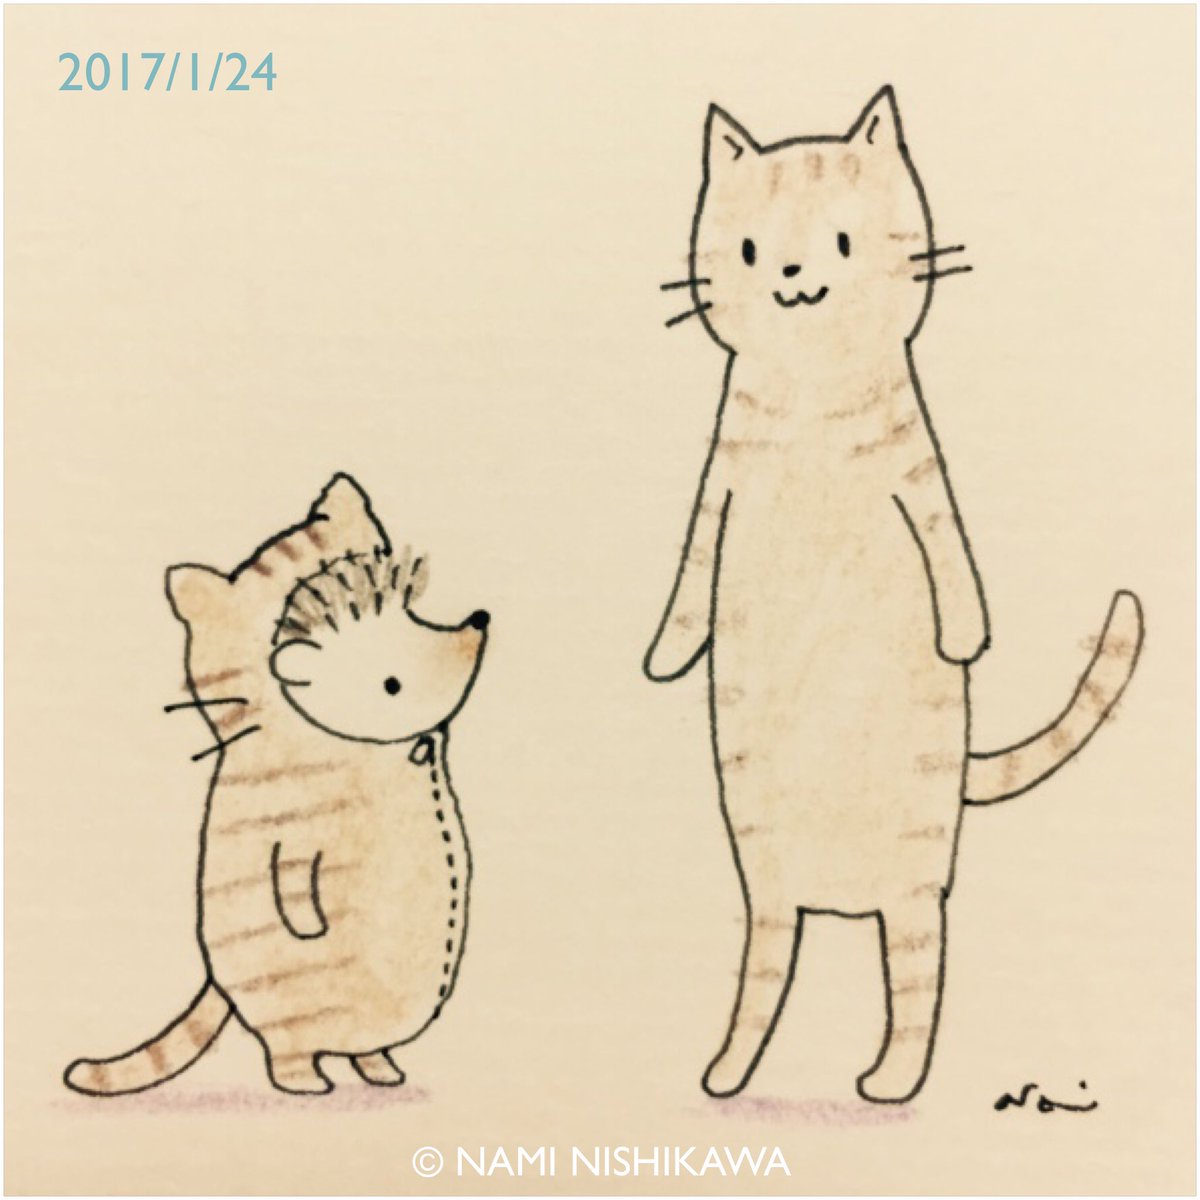 にしかわなみ なみはりねずみ Sur Twitter 1102 猫 Cats Illustration Hedgehog Cat イラスト ハリネズミ なみはりねずみ